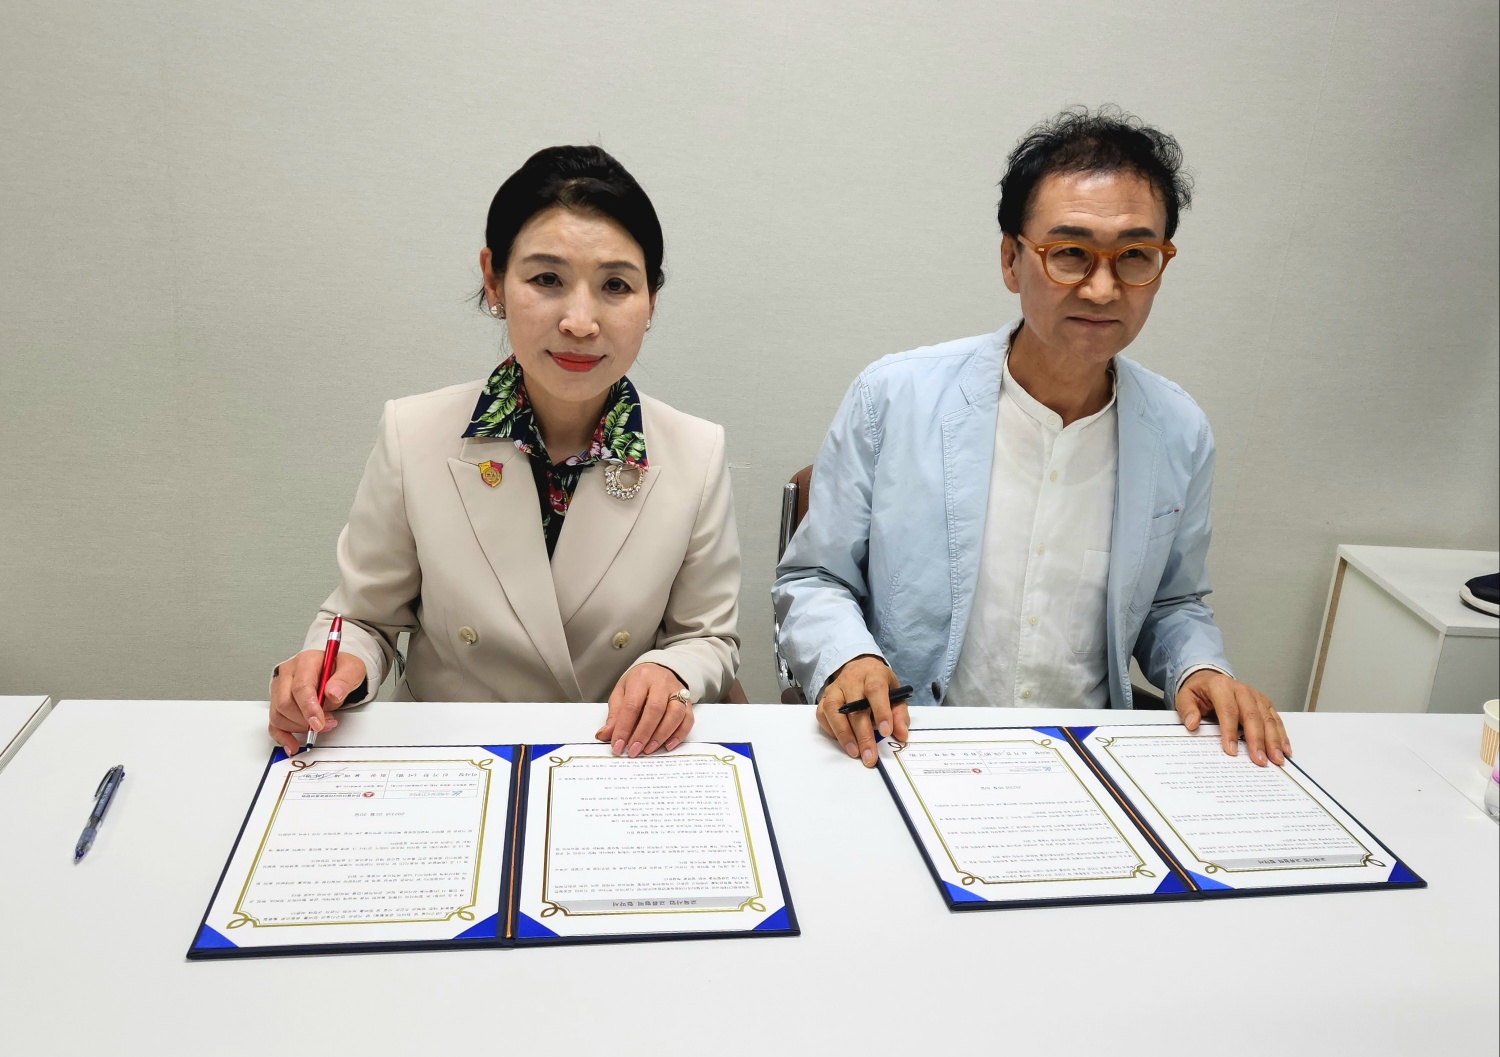 한국멀티미디어방송총연합회와 국제문화CT대학교, 전략적 산학 교류 교육 협력을 위한 업무협약서에 서명해